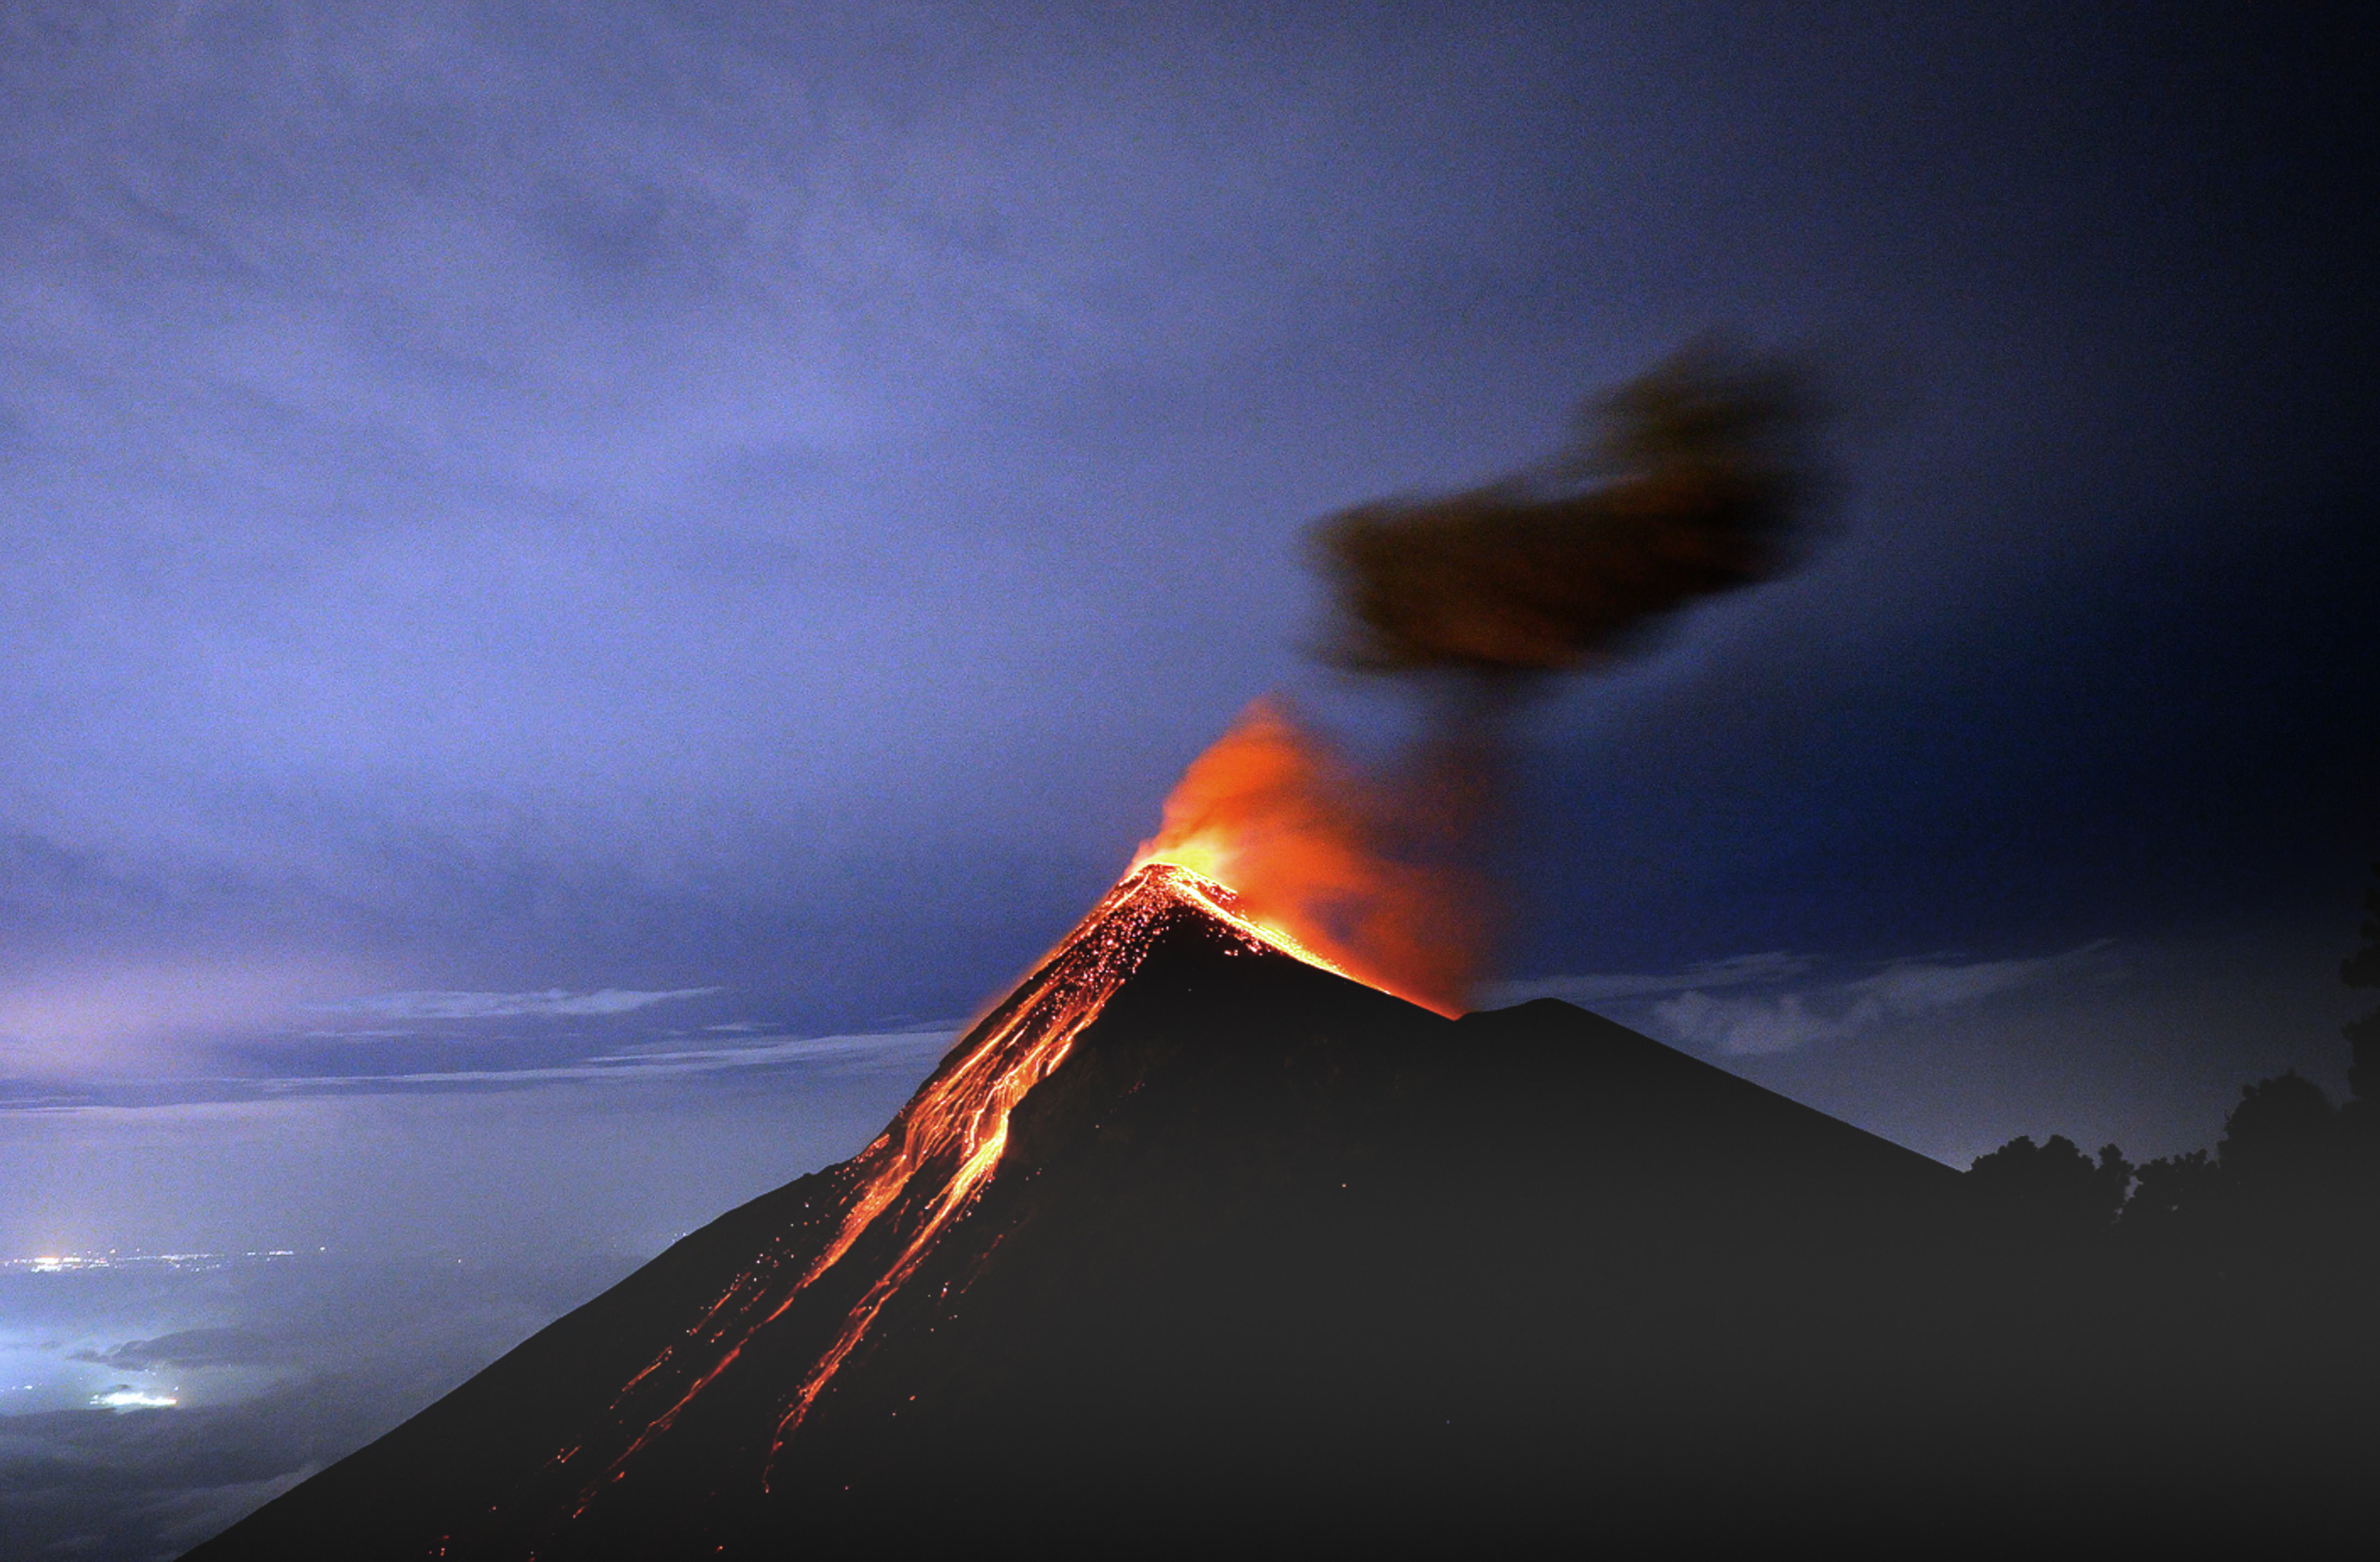 震撼!摄影师近距离拍摄富埃戈火山喷发瞬间